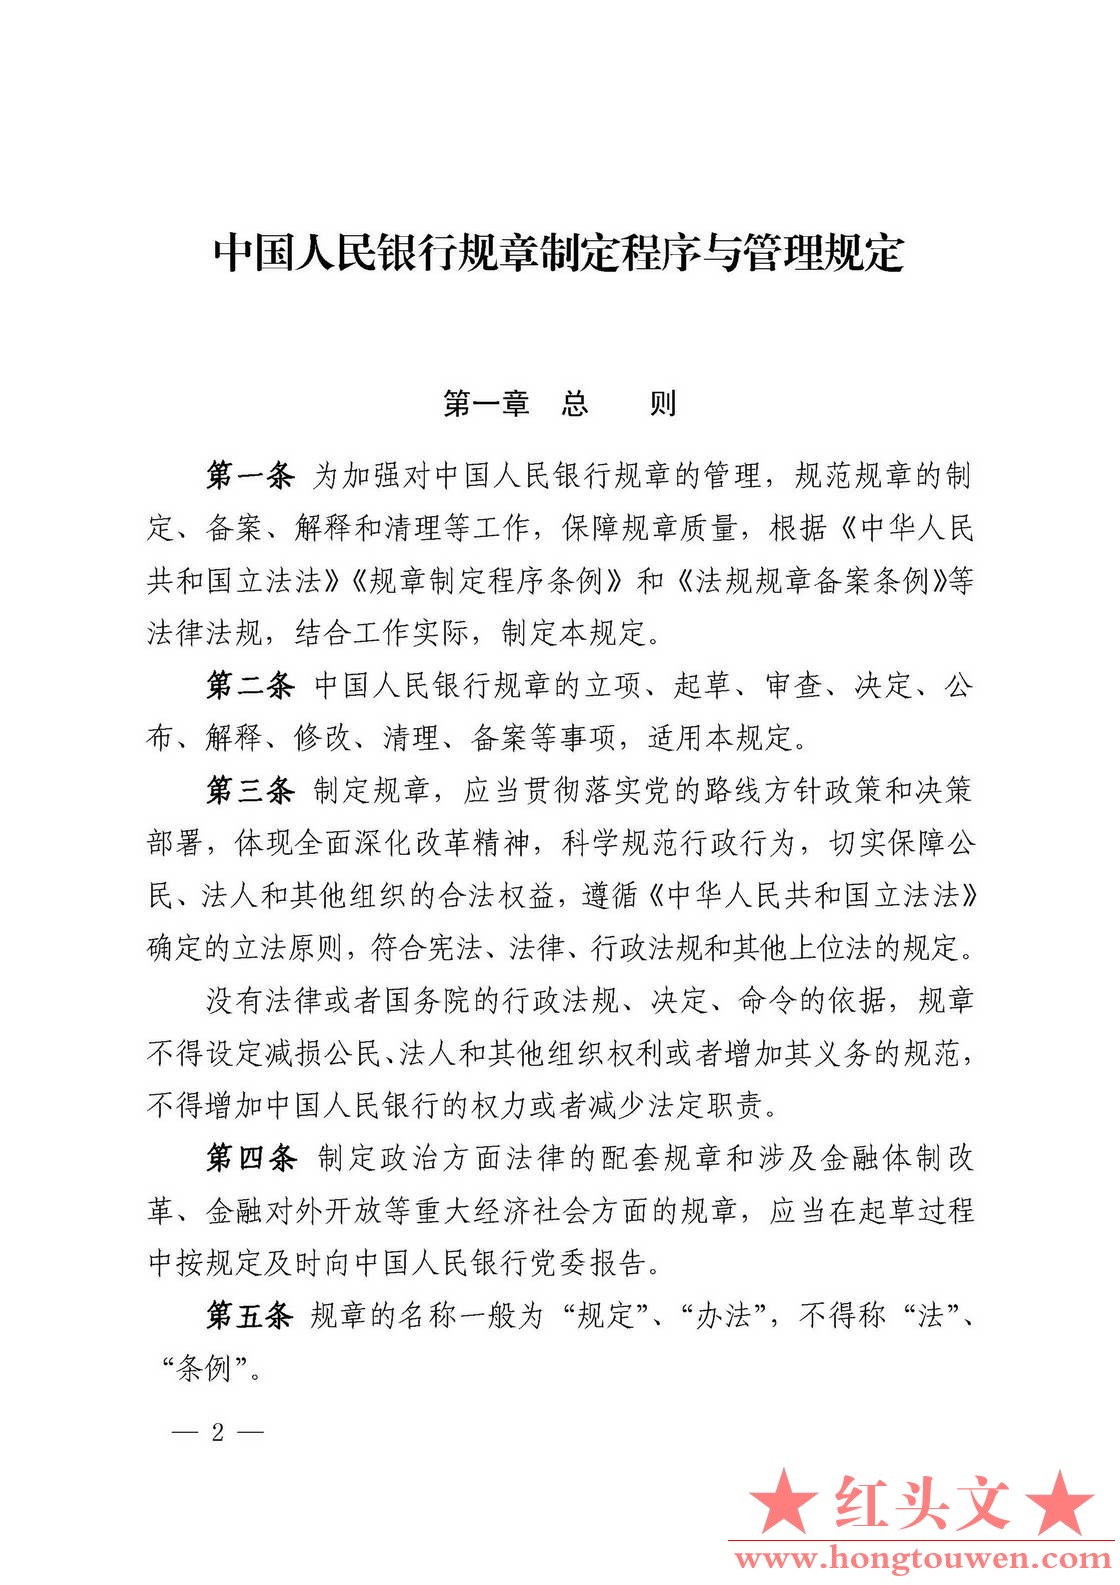 中国人民银行令[2018]3号-中国人民银行规章制定程序与管理规定_页面_02.jpg.jpg